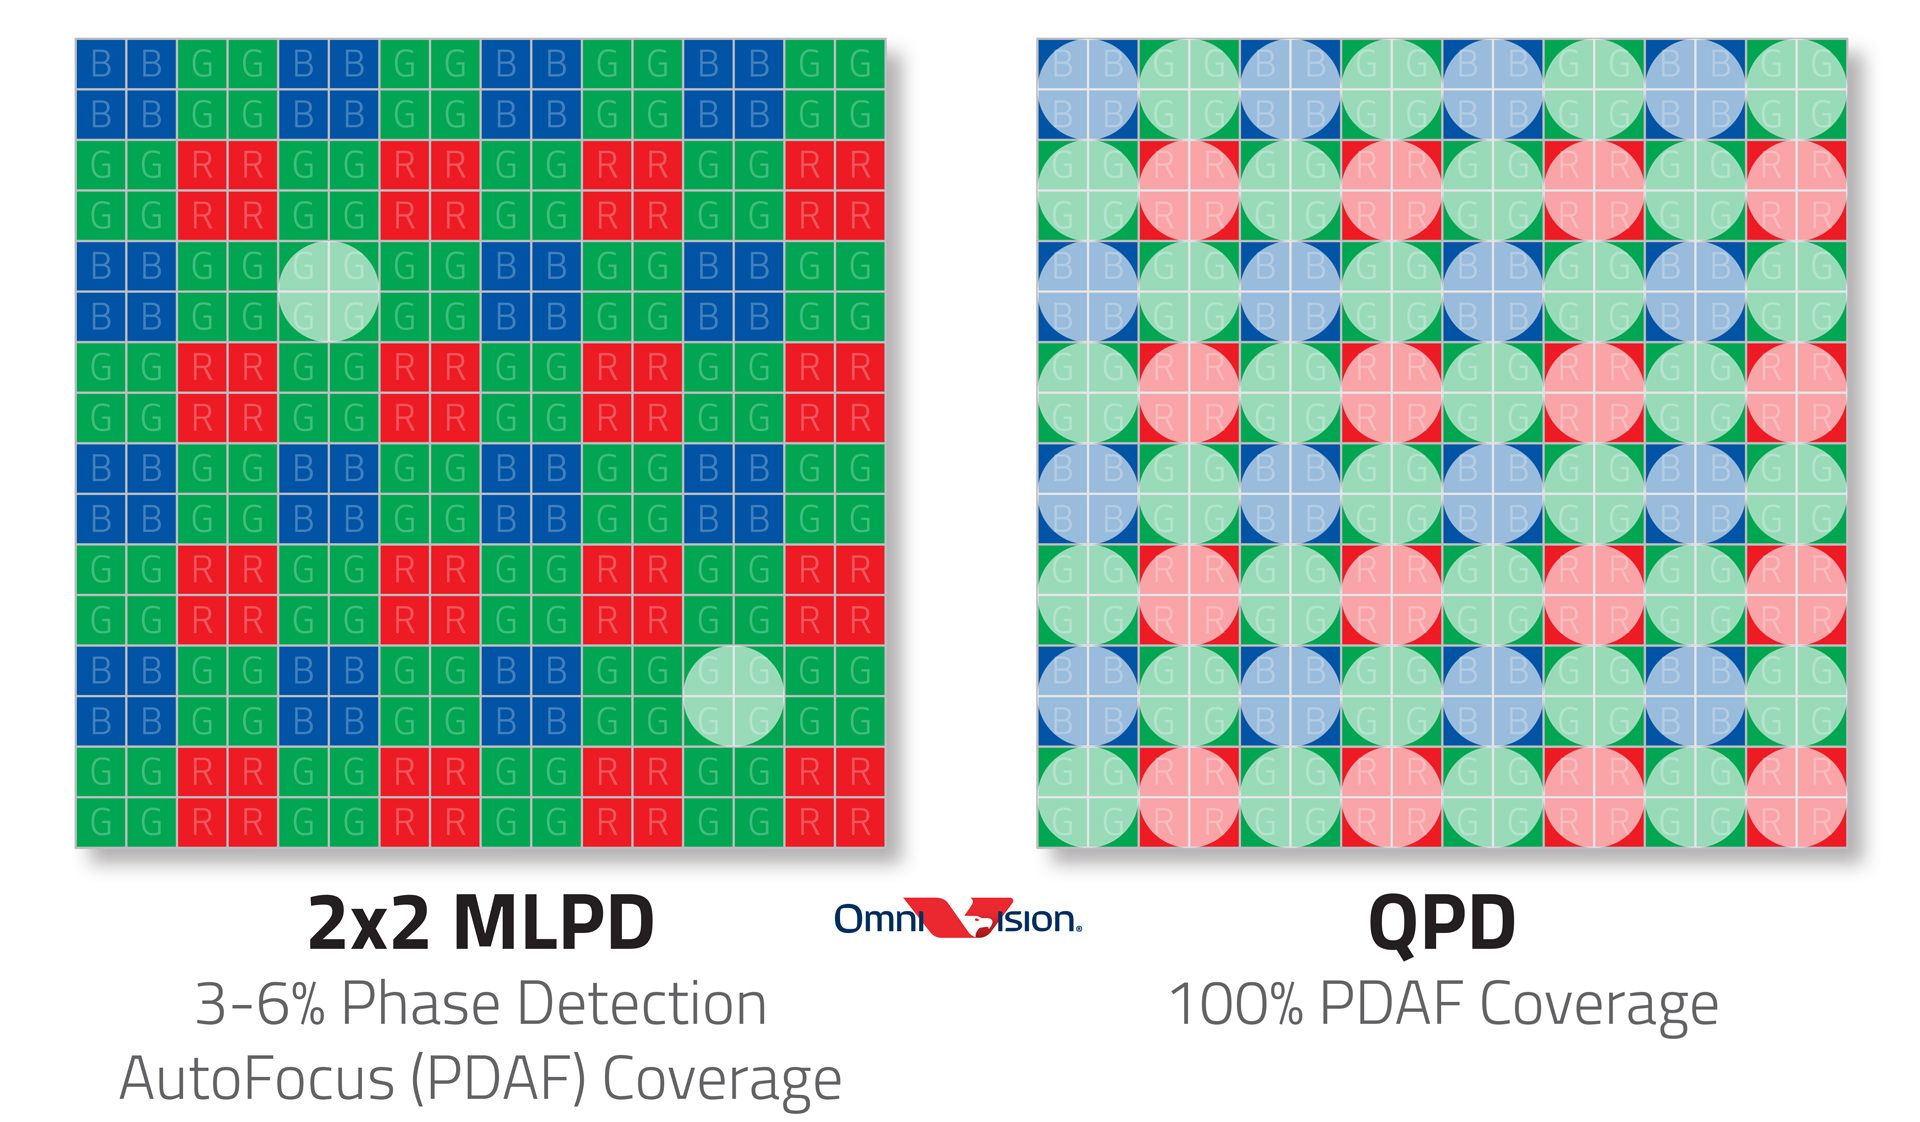 تفاوت تکنیک فوکوس خودکار QDP با MLPD